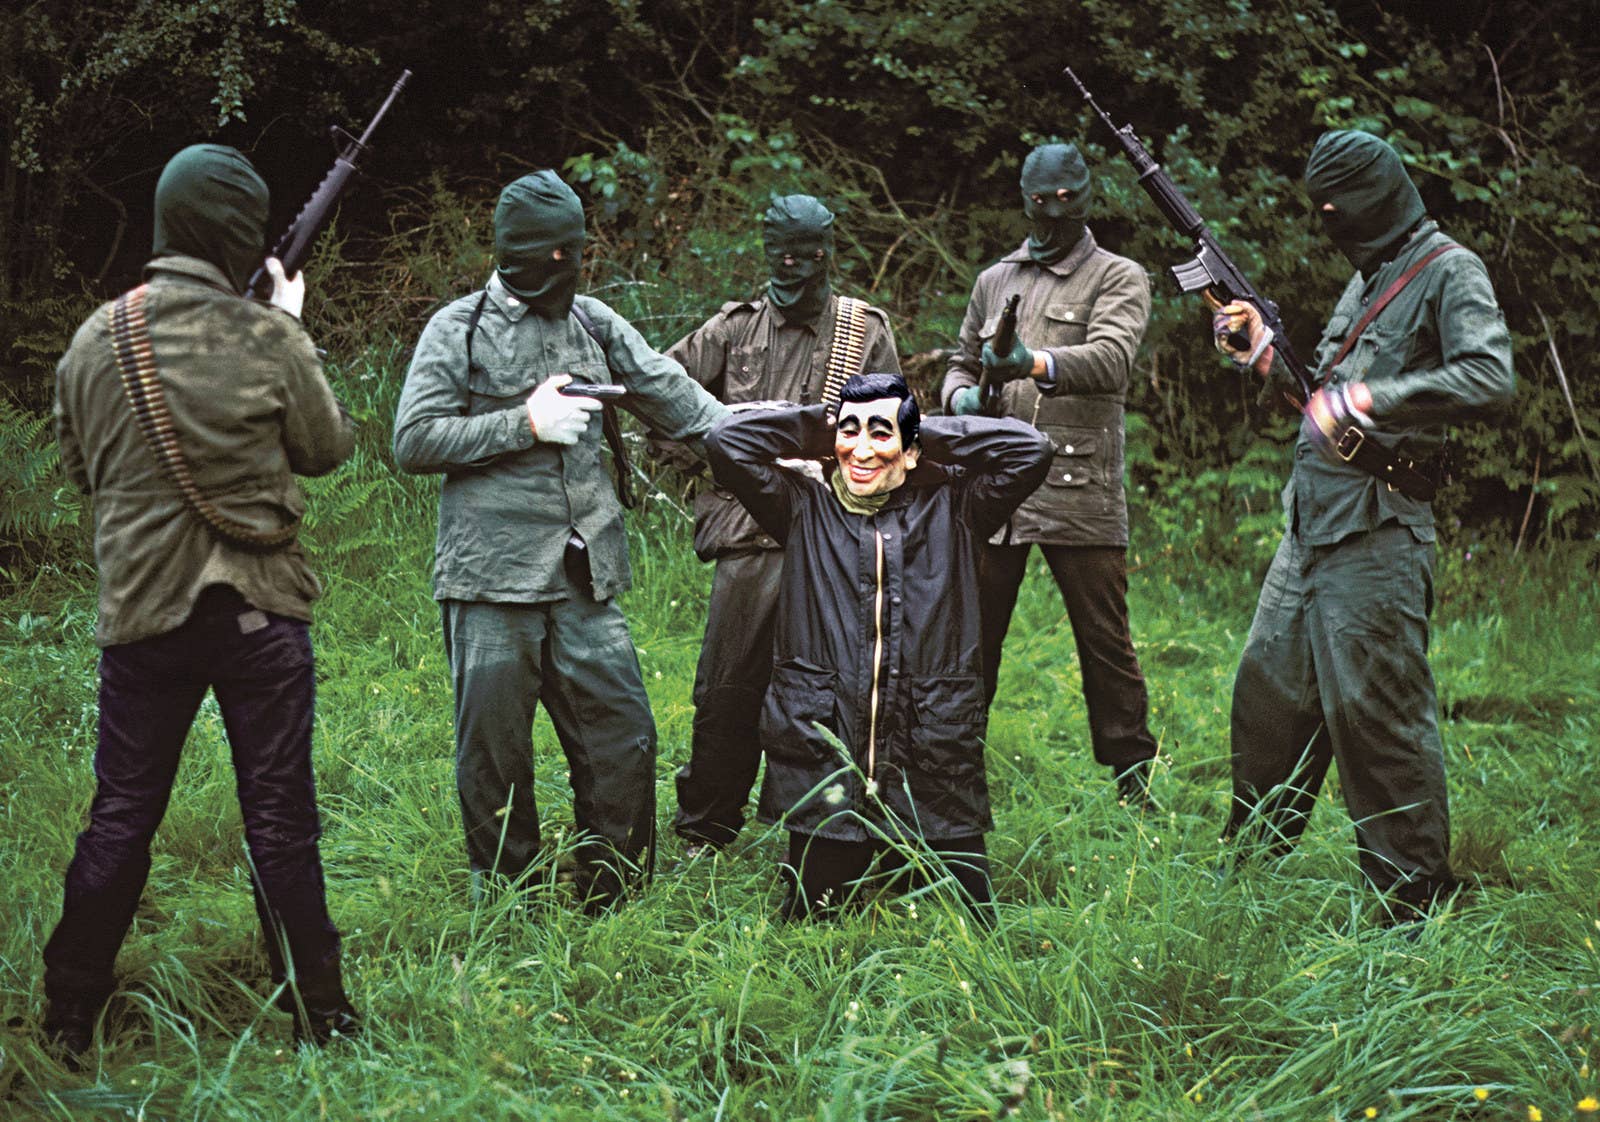 Soldados do IRA (Exército Republicano Irlandês), em 1985.